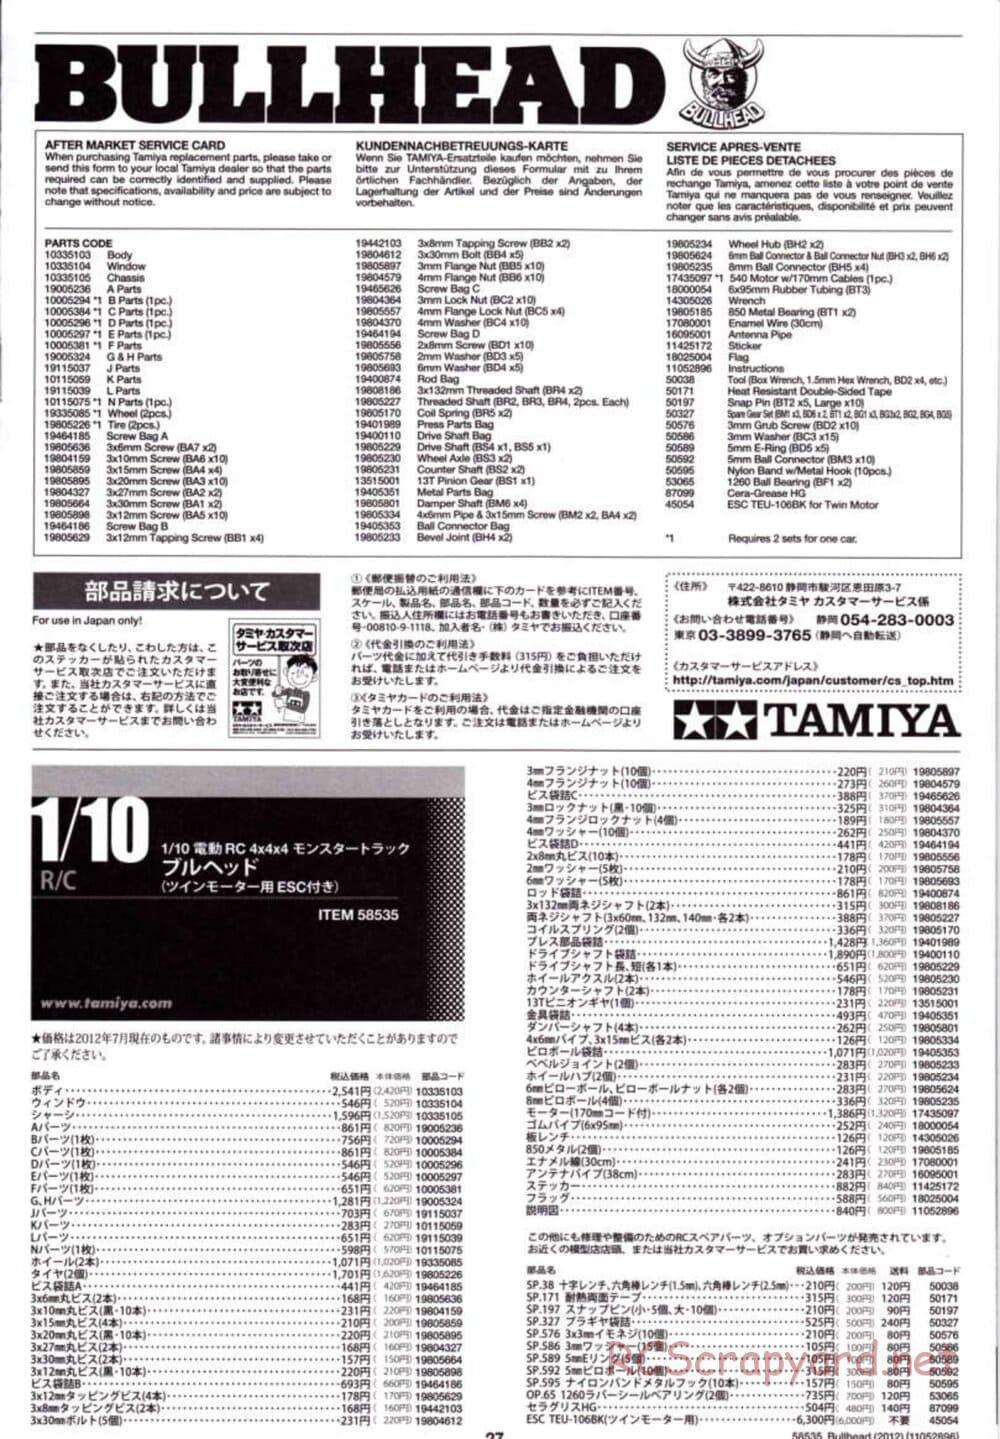 Tamiya - Bullhead 2012 - CB Chassis - Manual - Page 27